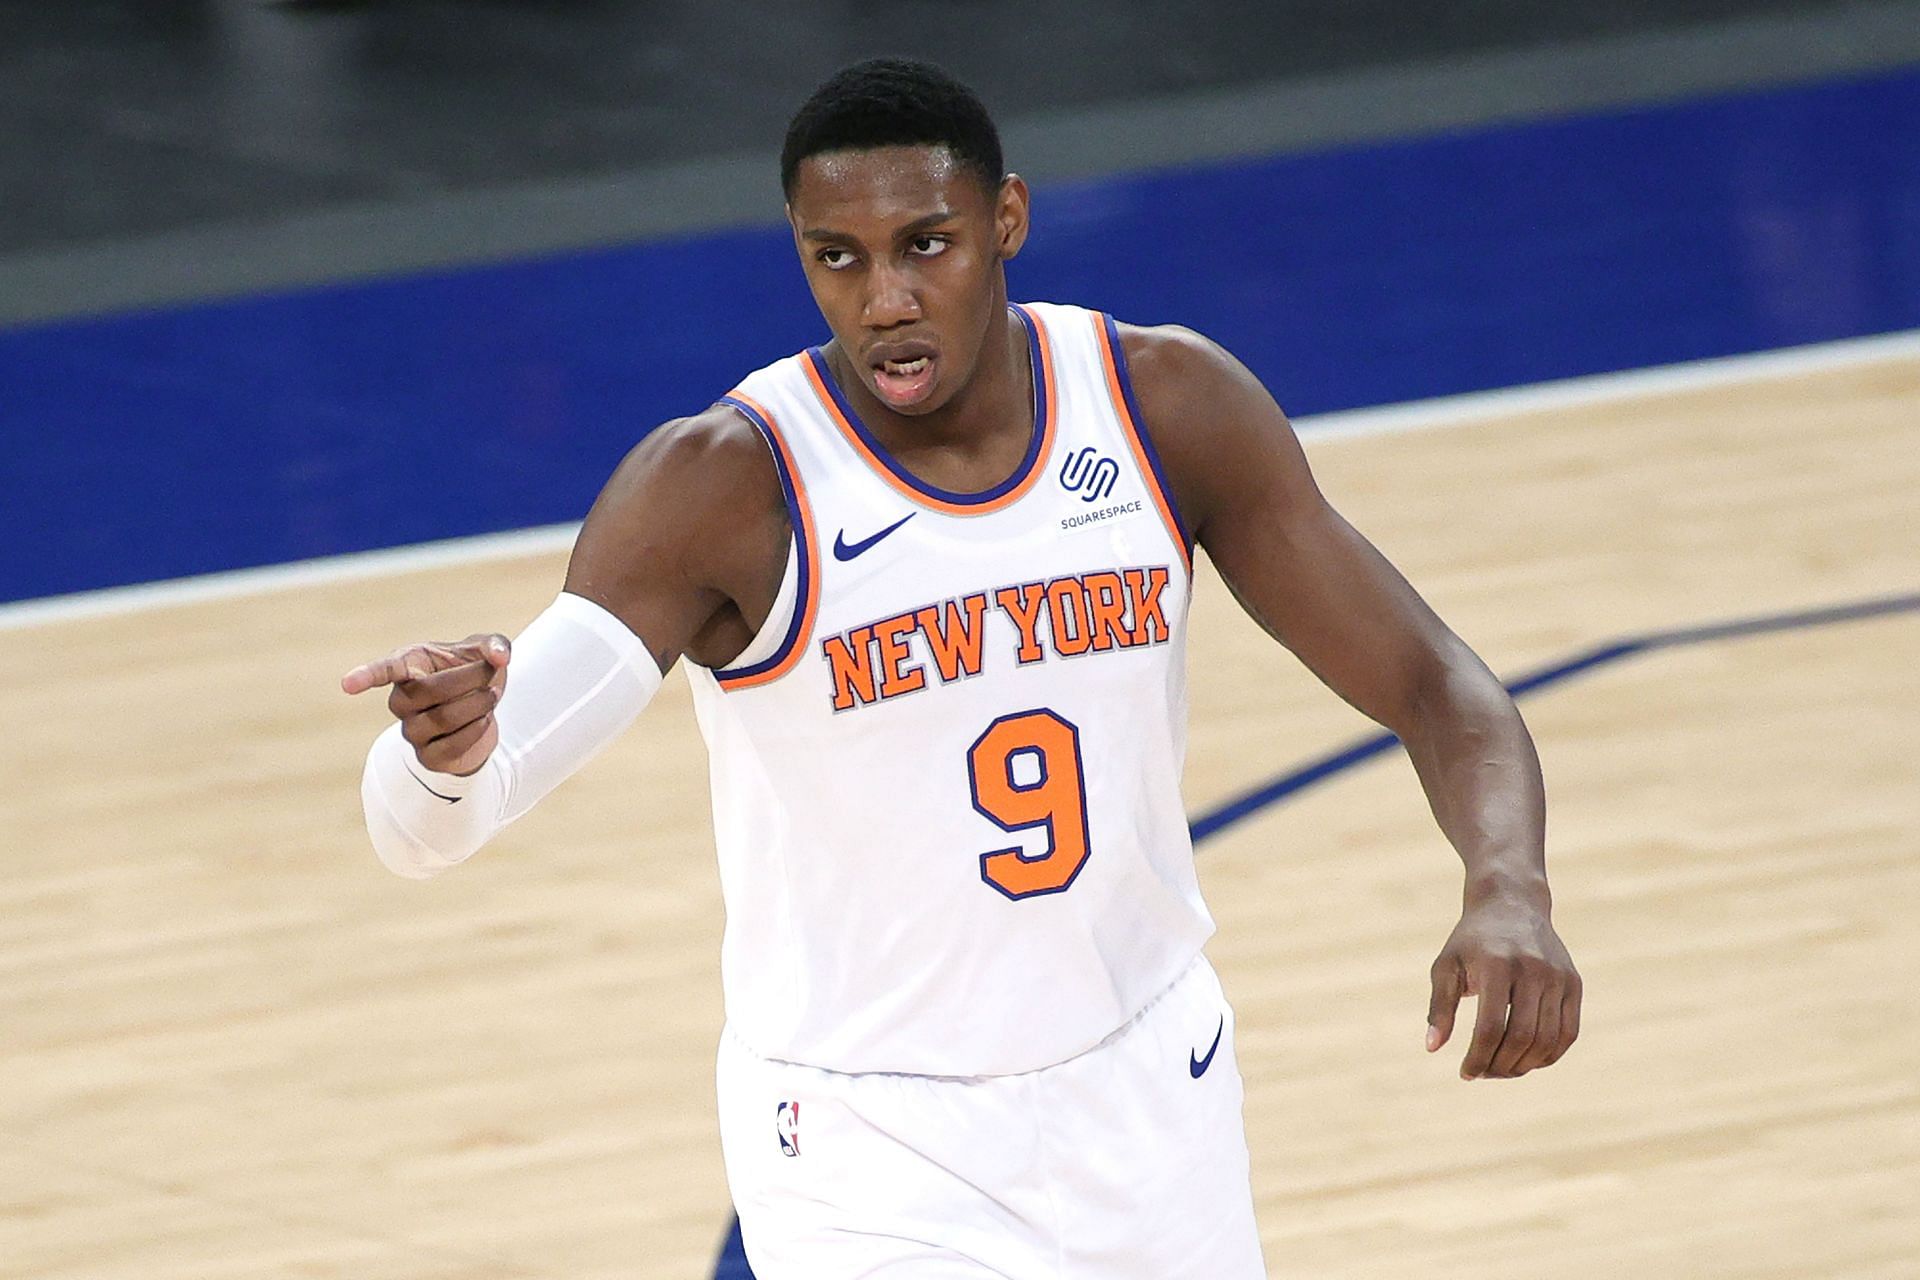 RJ Barrett of the New York Knicks